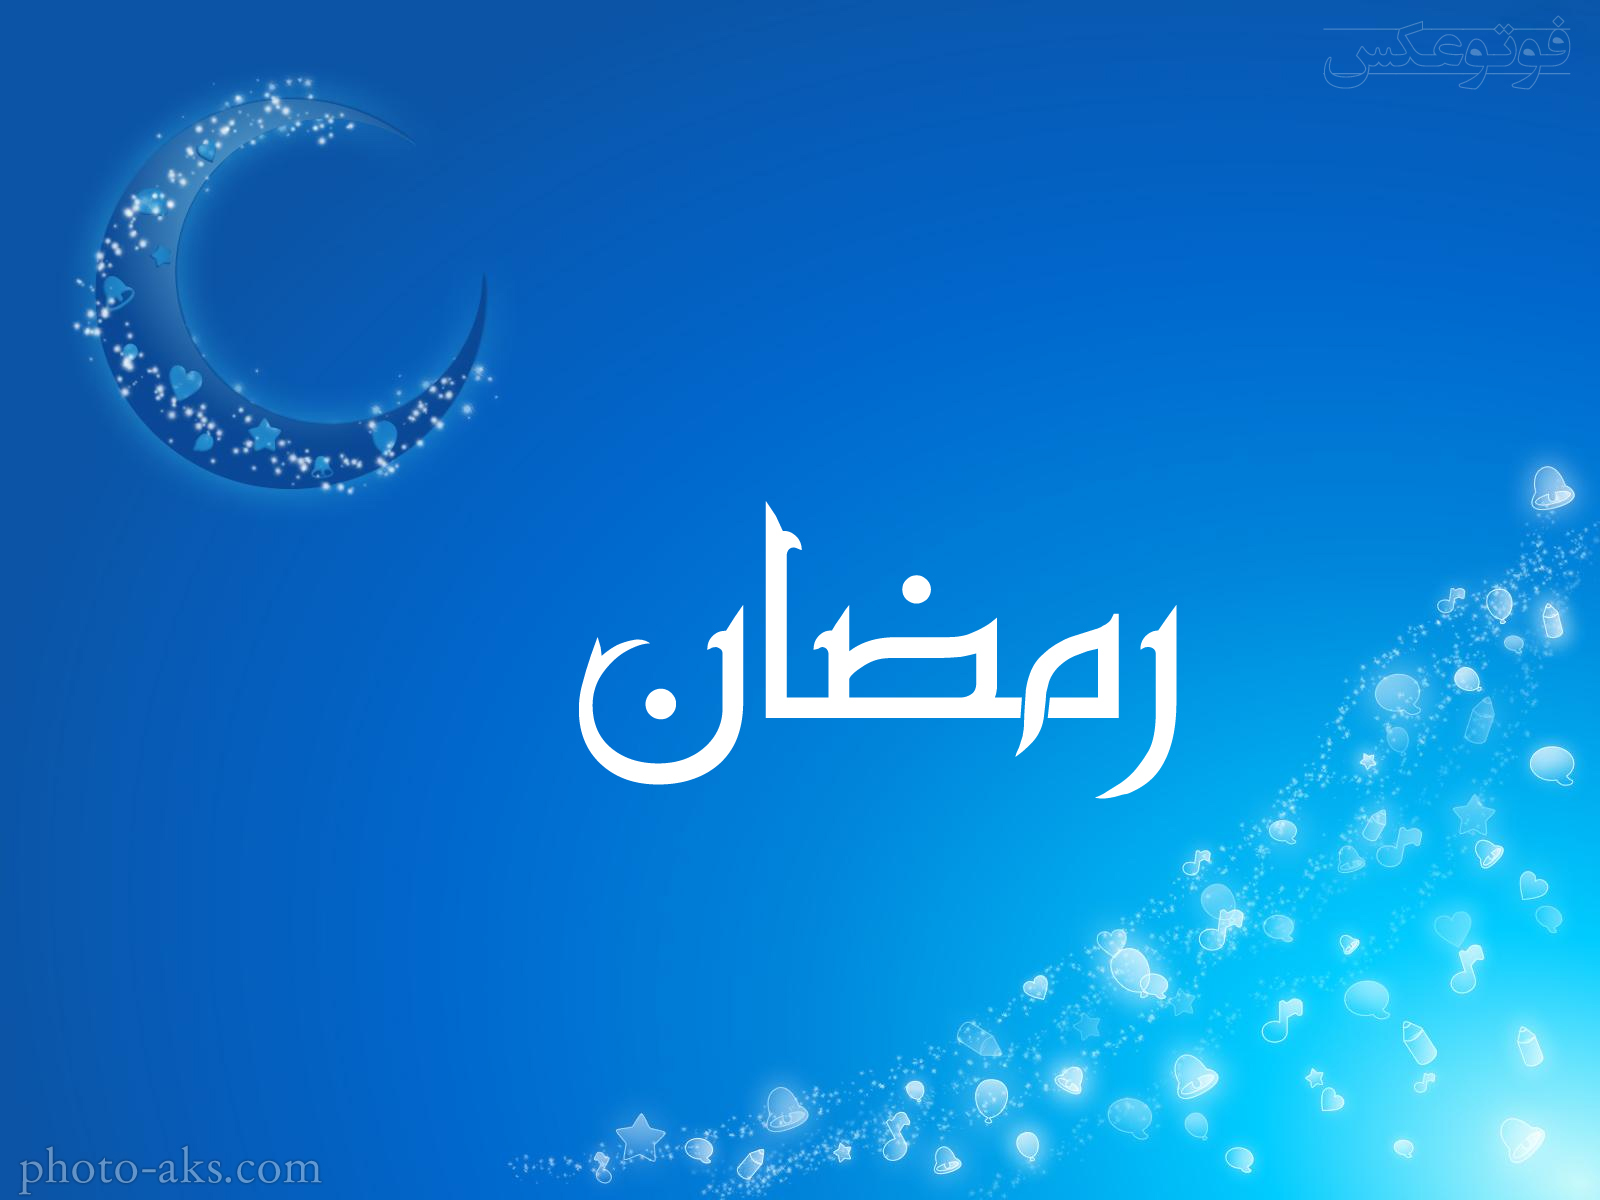 1496125782wallpaper-ramadan.jpg